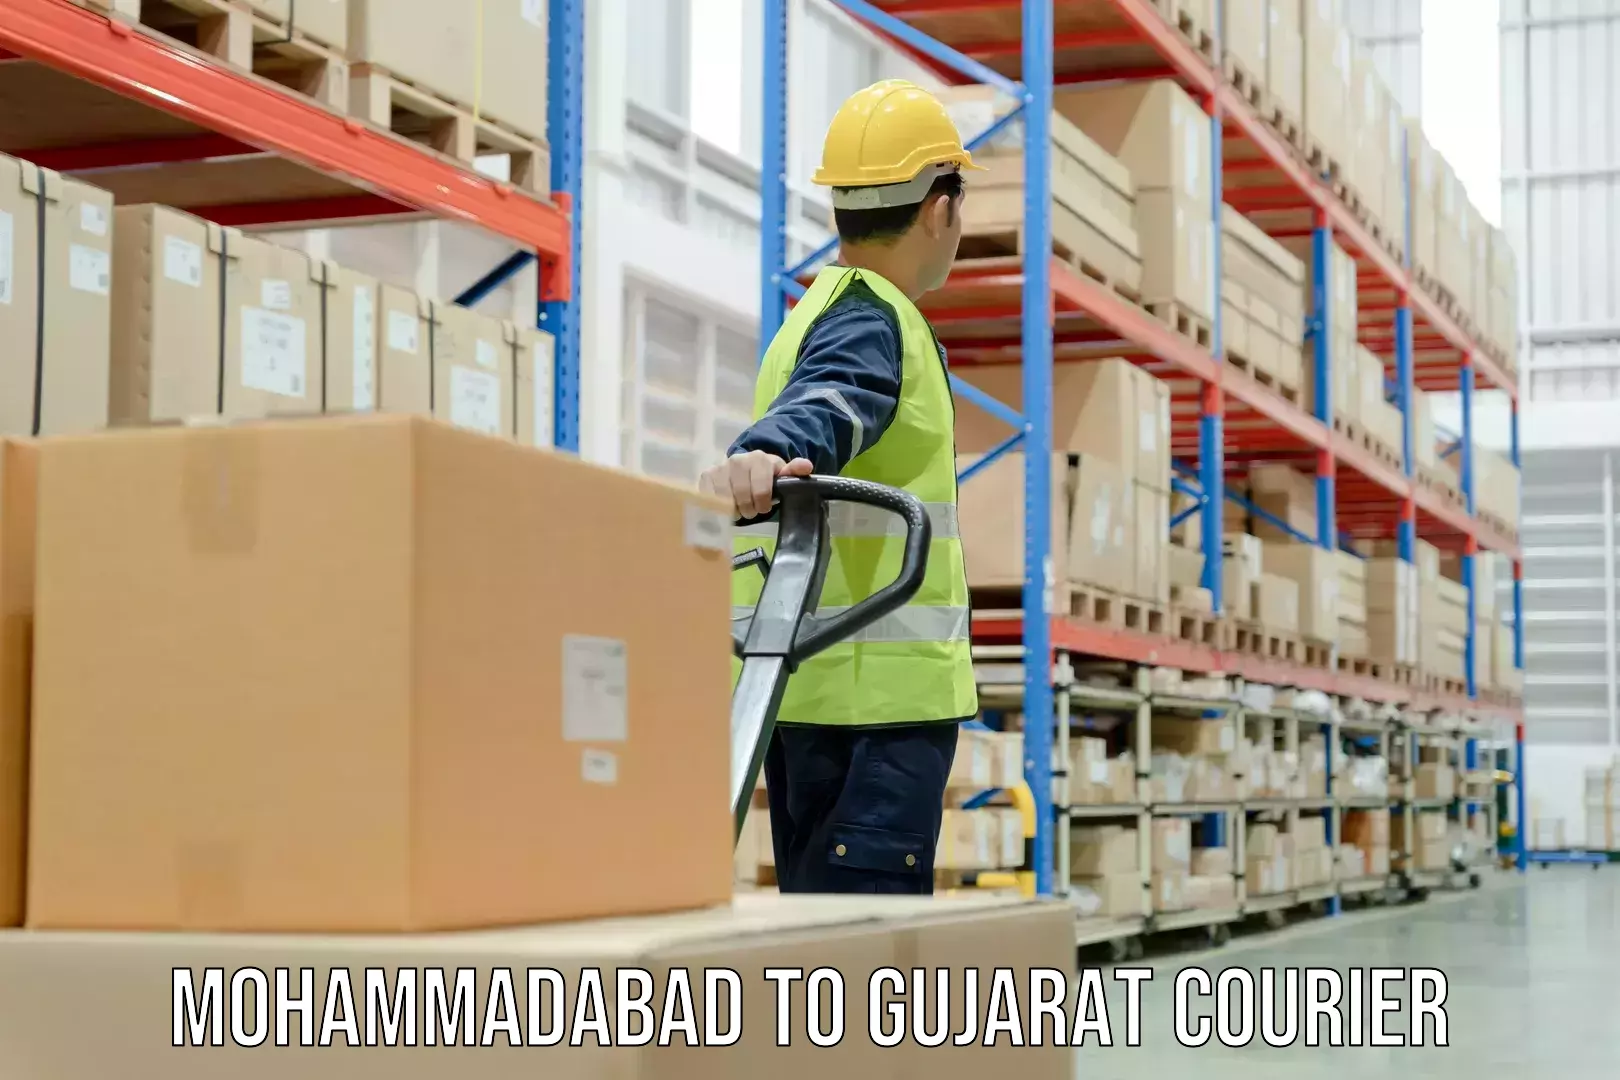 Efficient cargo handling Mohammadabad to Gujarat